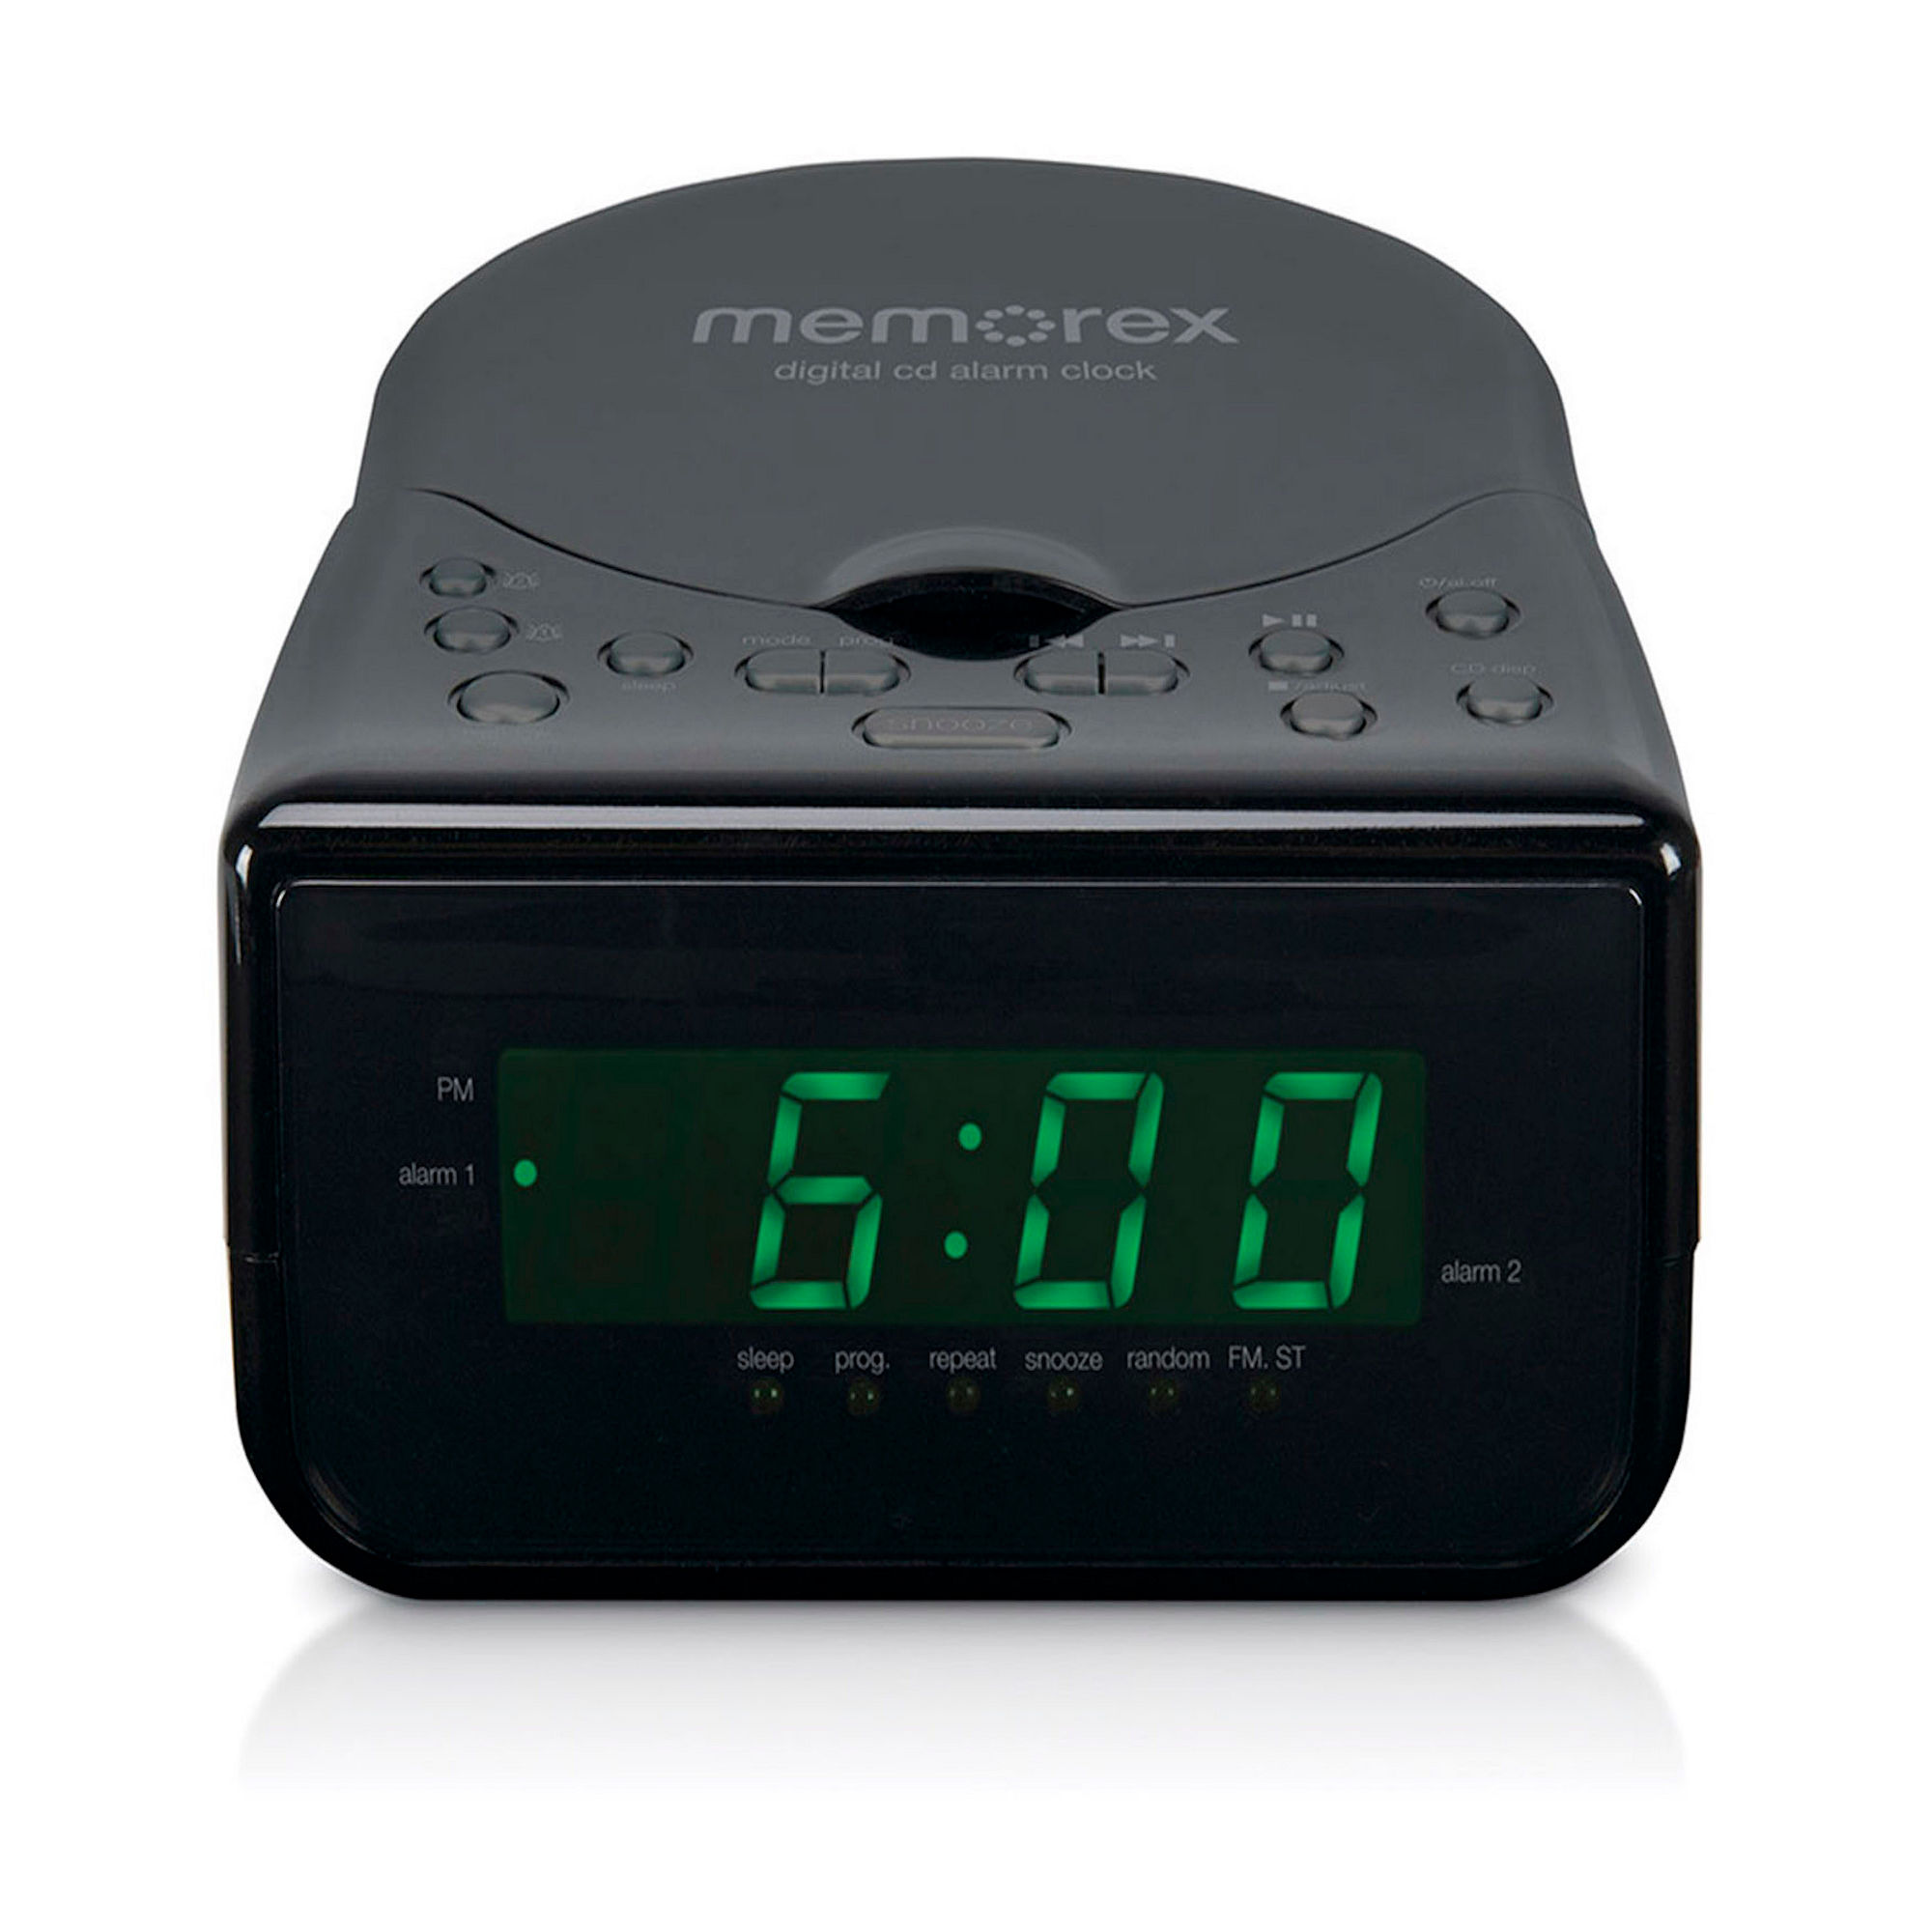 Memorex MC7223 CD Alarm Clock Radio